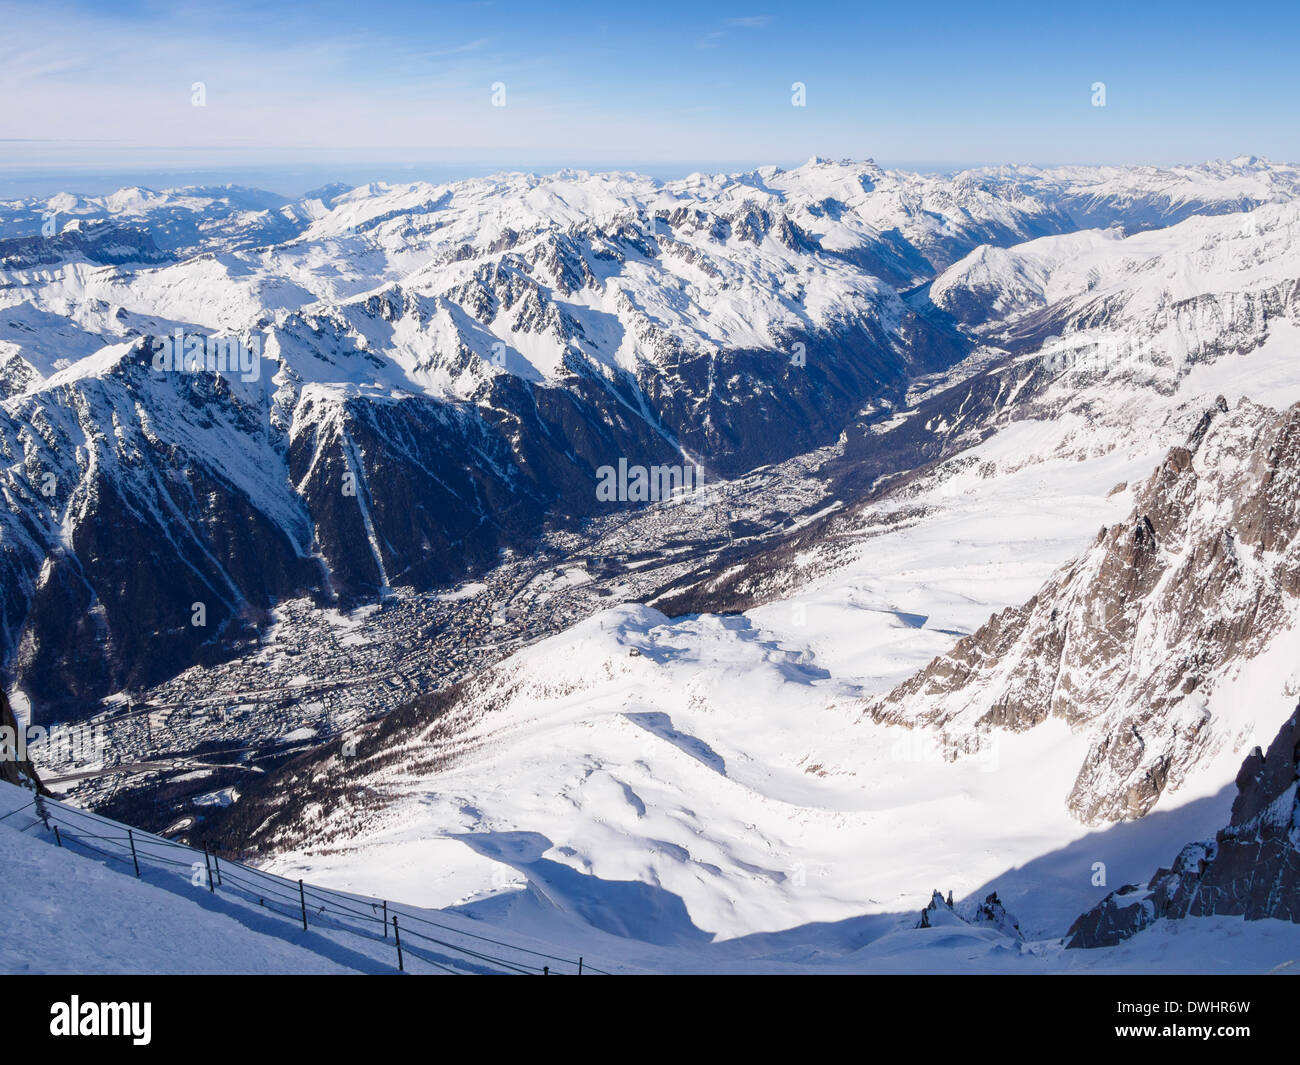 Vue de la vallée au-dessus de l'Aiguille du Midi avec de la neige sur les Alpes françaises. Chamonix-Mont-Blanc, Haute Savoie, Rhône-Alpes, France Banque D'Images